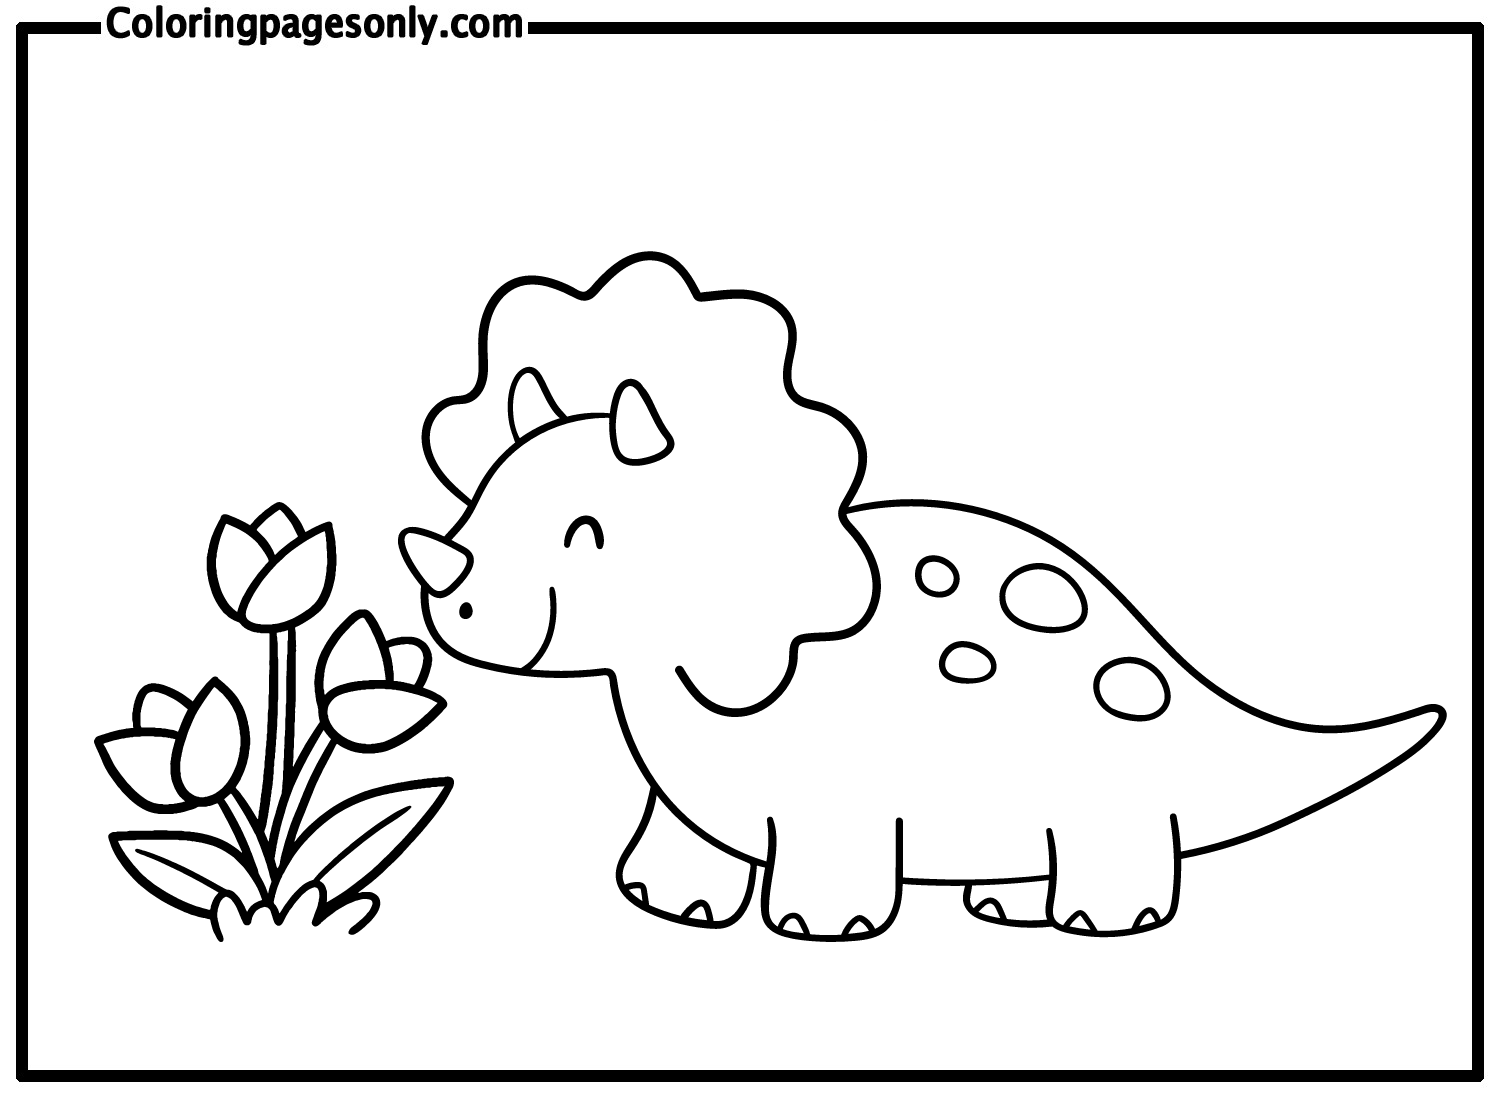 Динозавр с цветами трицератопса